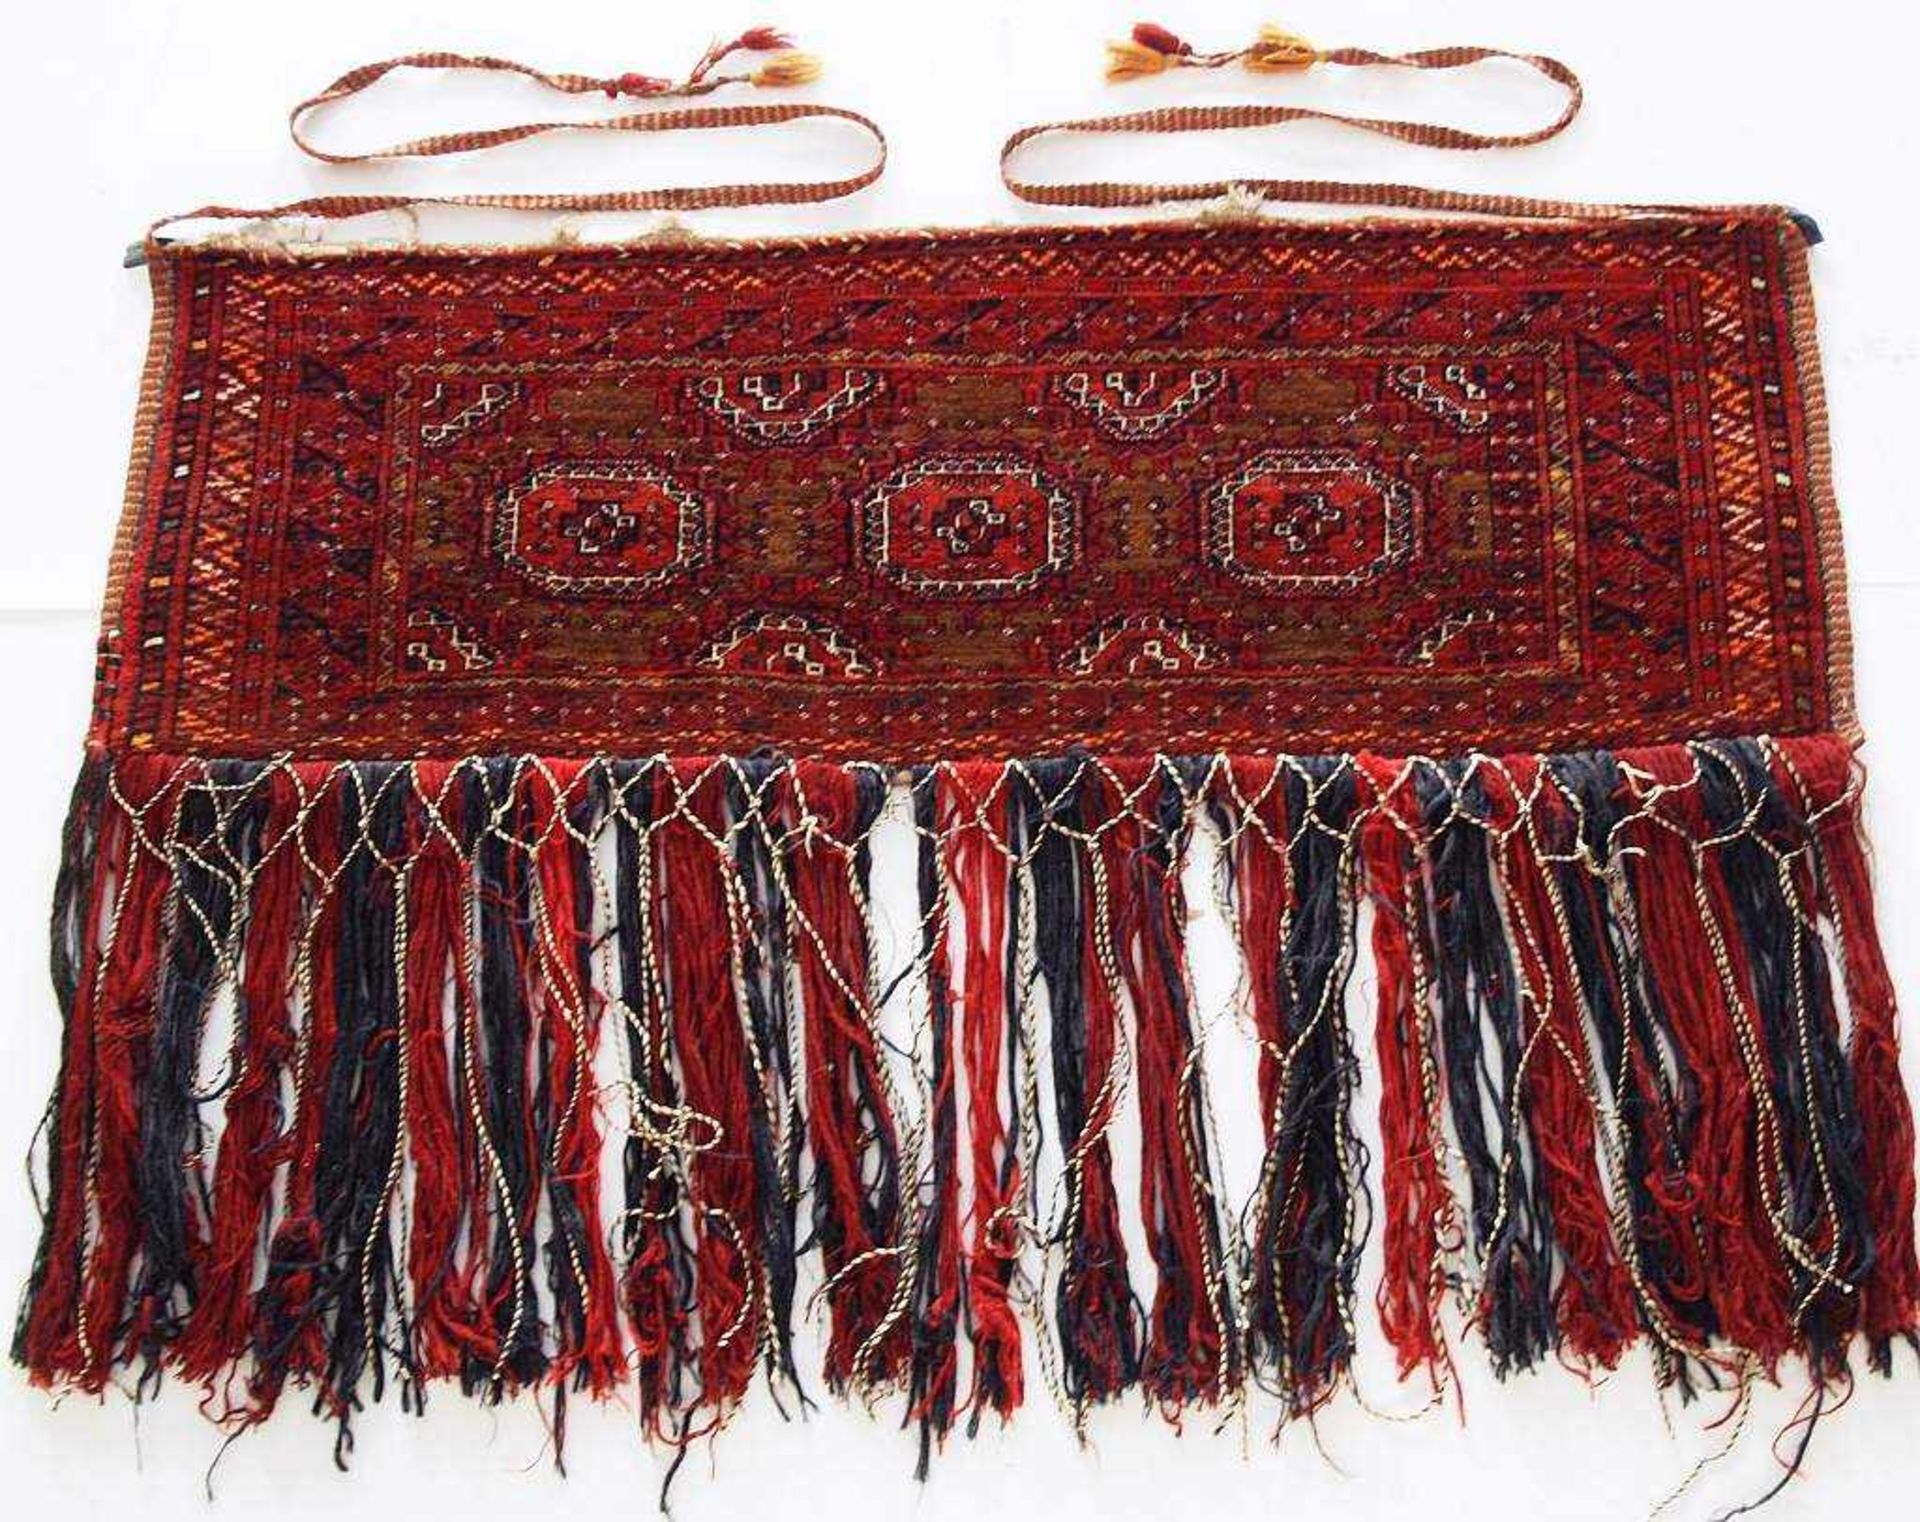 Orientalische Satteldecke. Orientalische Satteldecke. Wohl Jamoud / Turkmenistan. Wolle auf Wolle, - Bild 2 aus 4